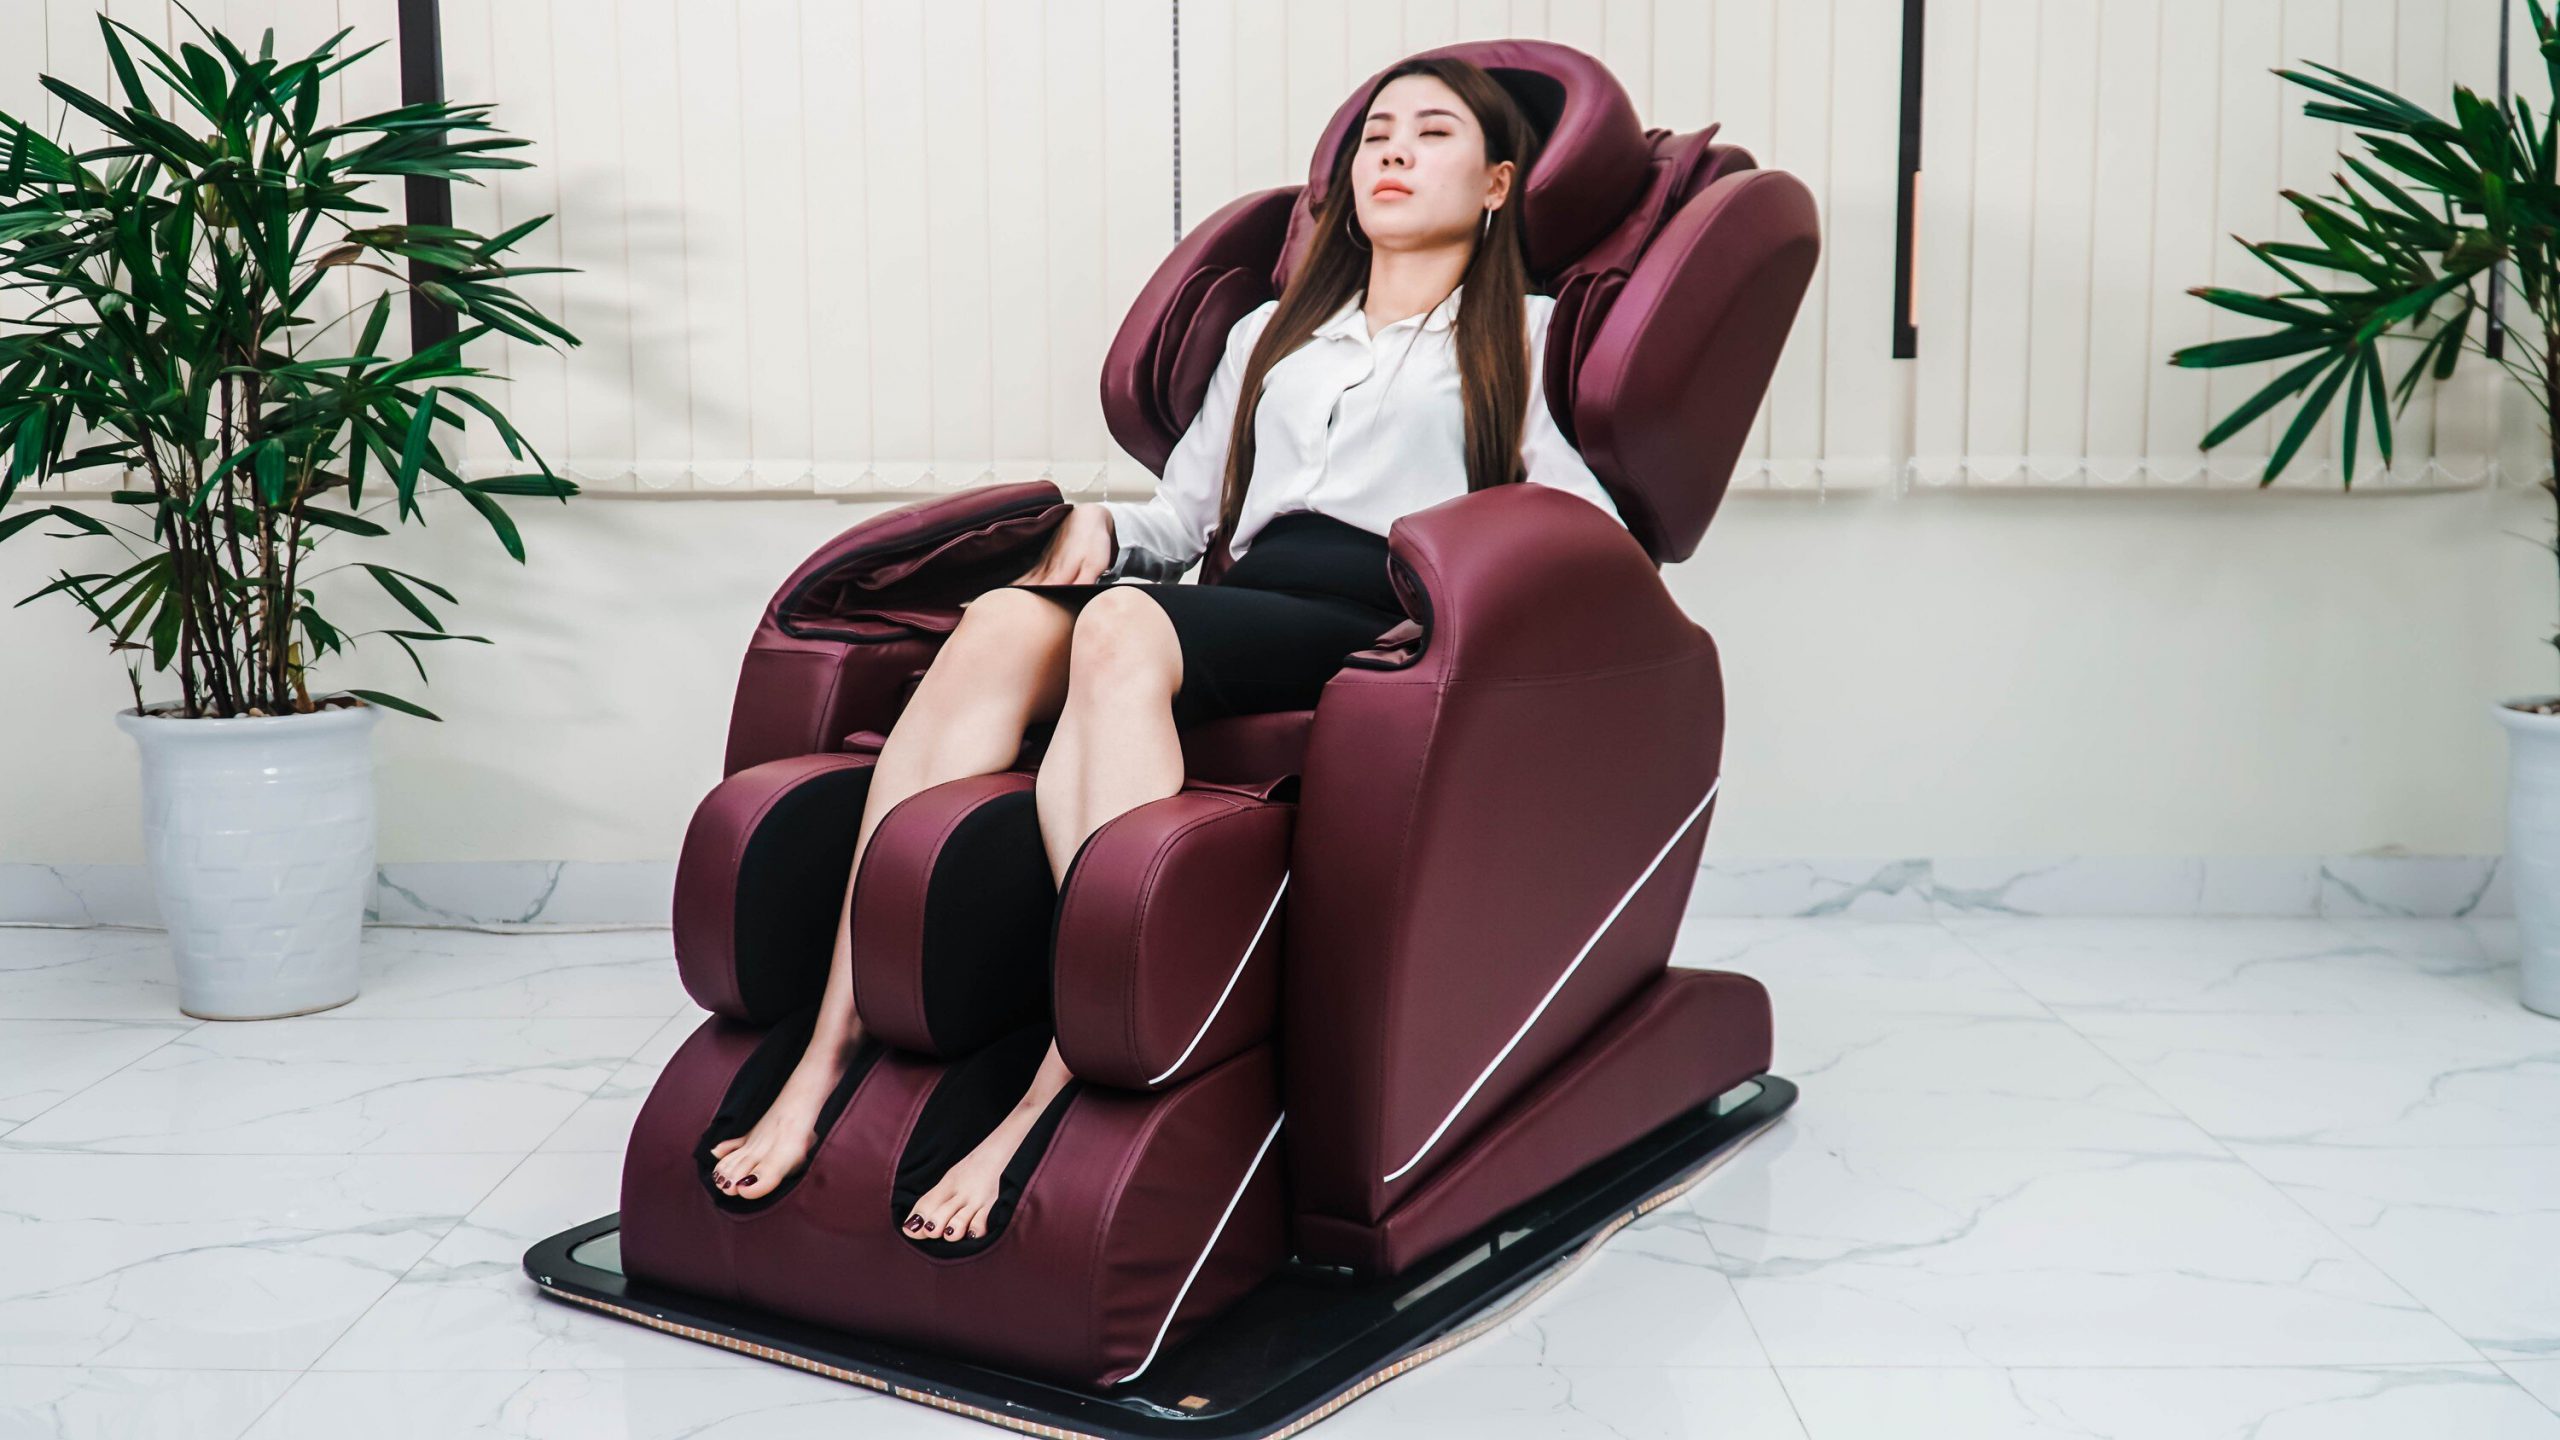 Ghế massage Trung Quốc là dòng sản phẩm đang được bày bán tràn lan trên thị trường hiện nay